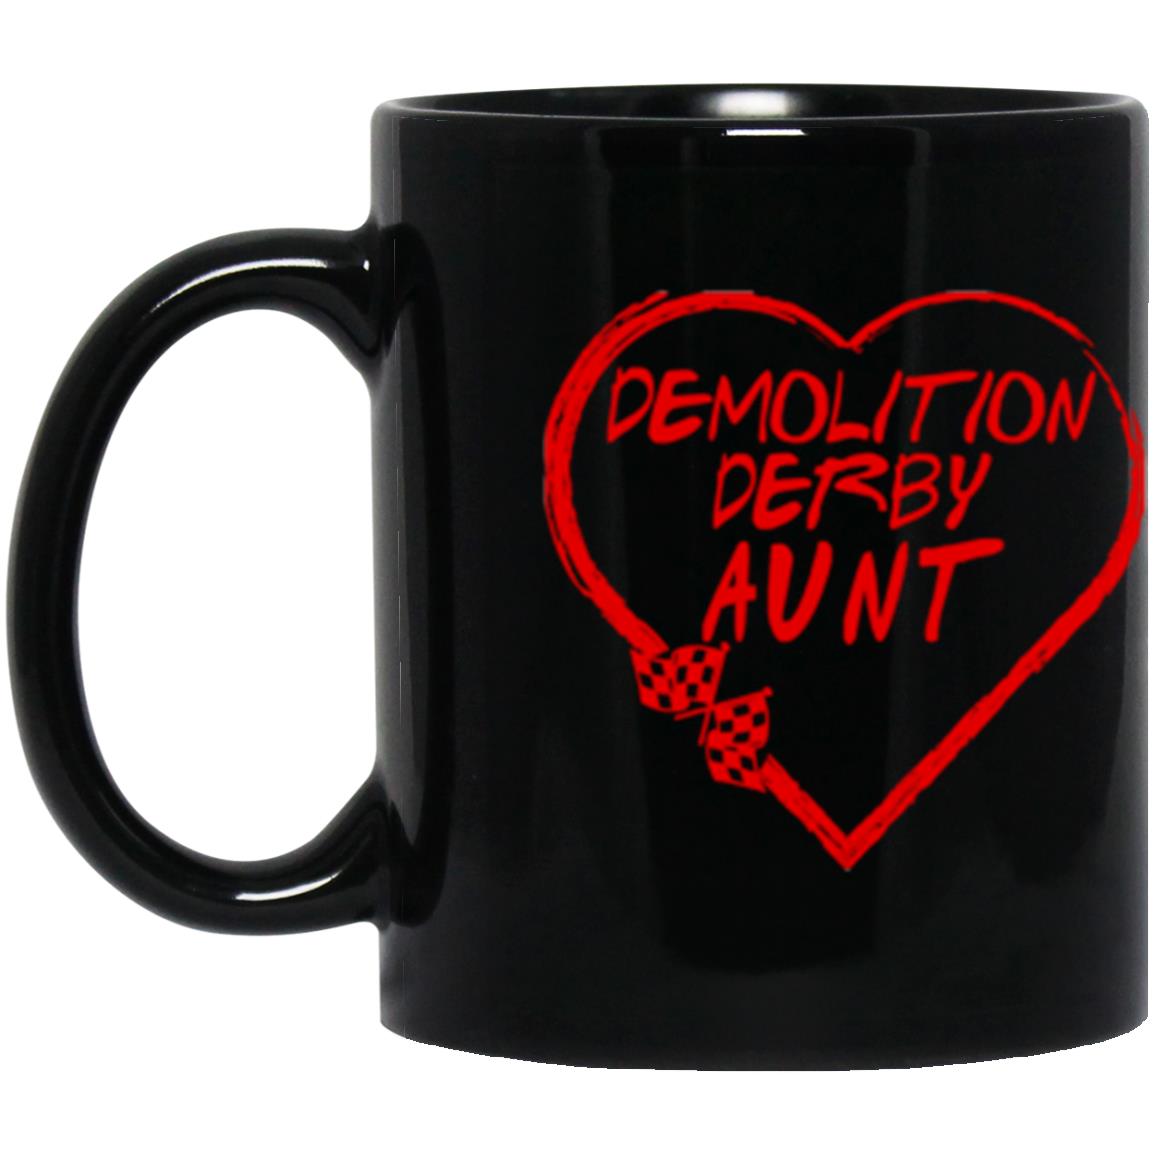 Demolition Derby Aunt Heart 11 oz. Black Mug